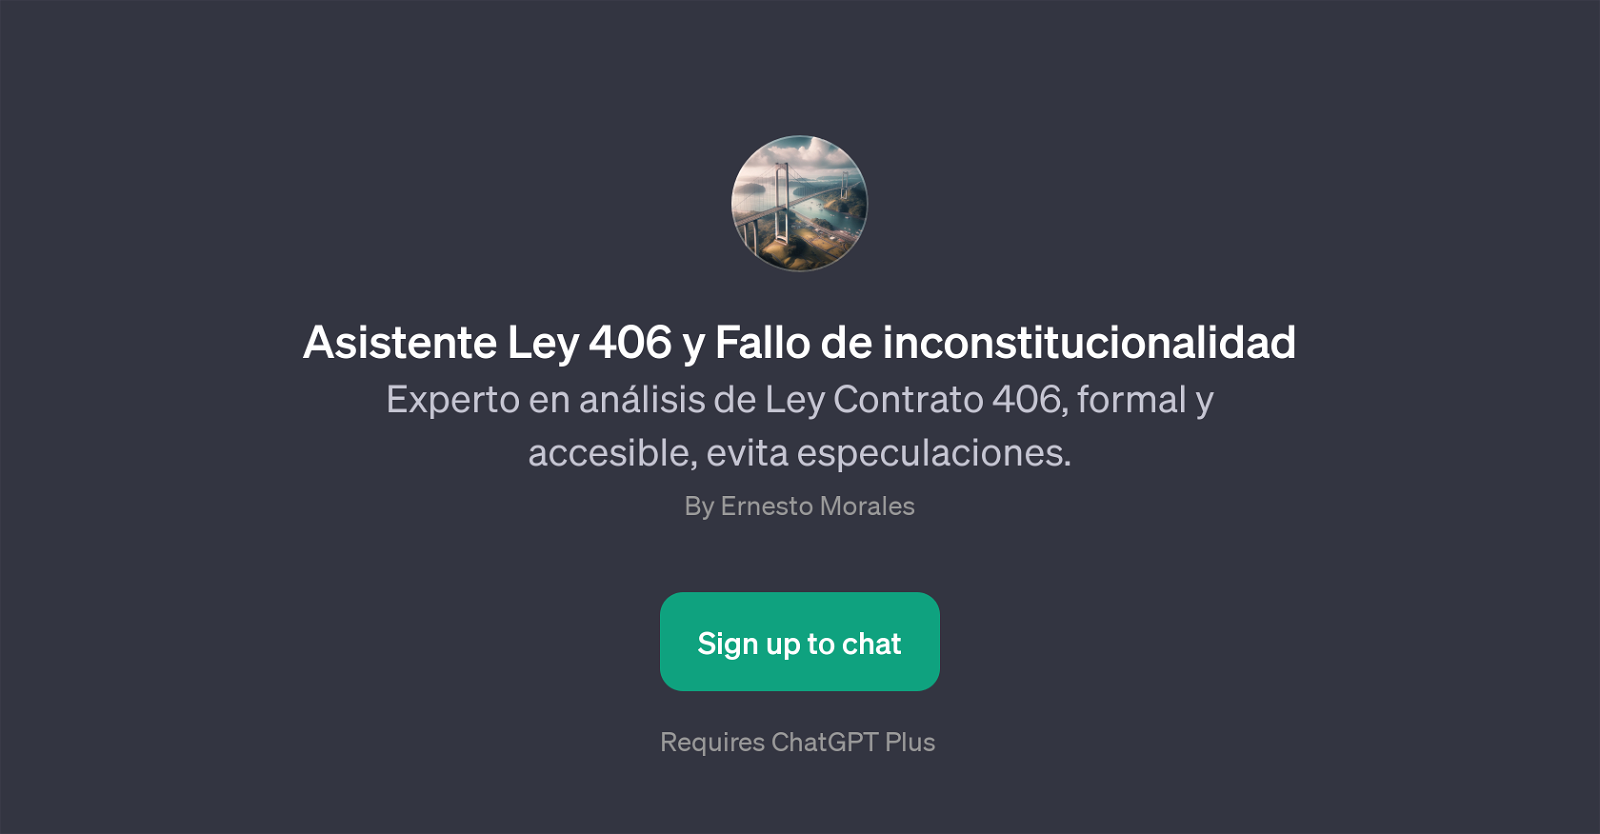 Asistente Ley 406 y Fallo de inconstitucionalidad website